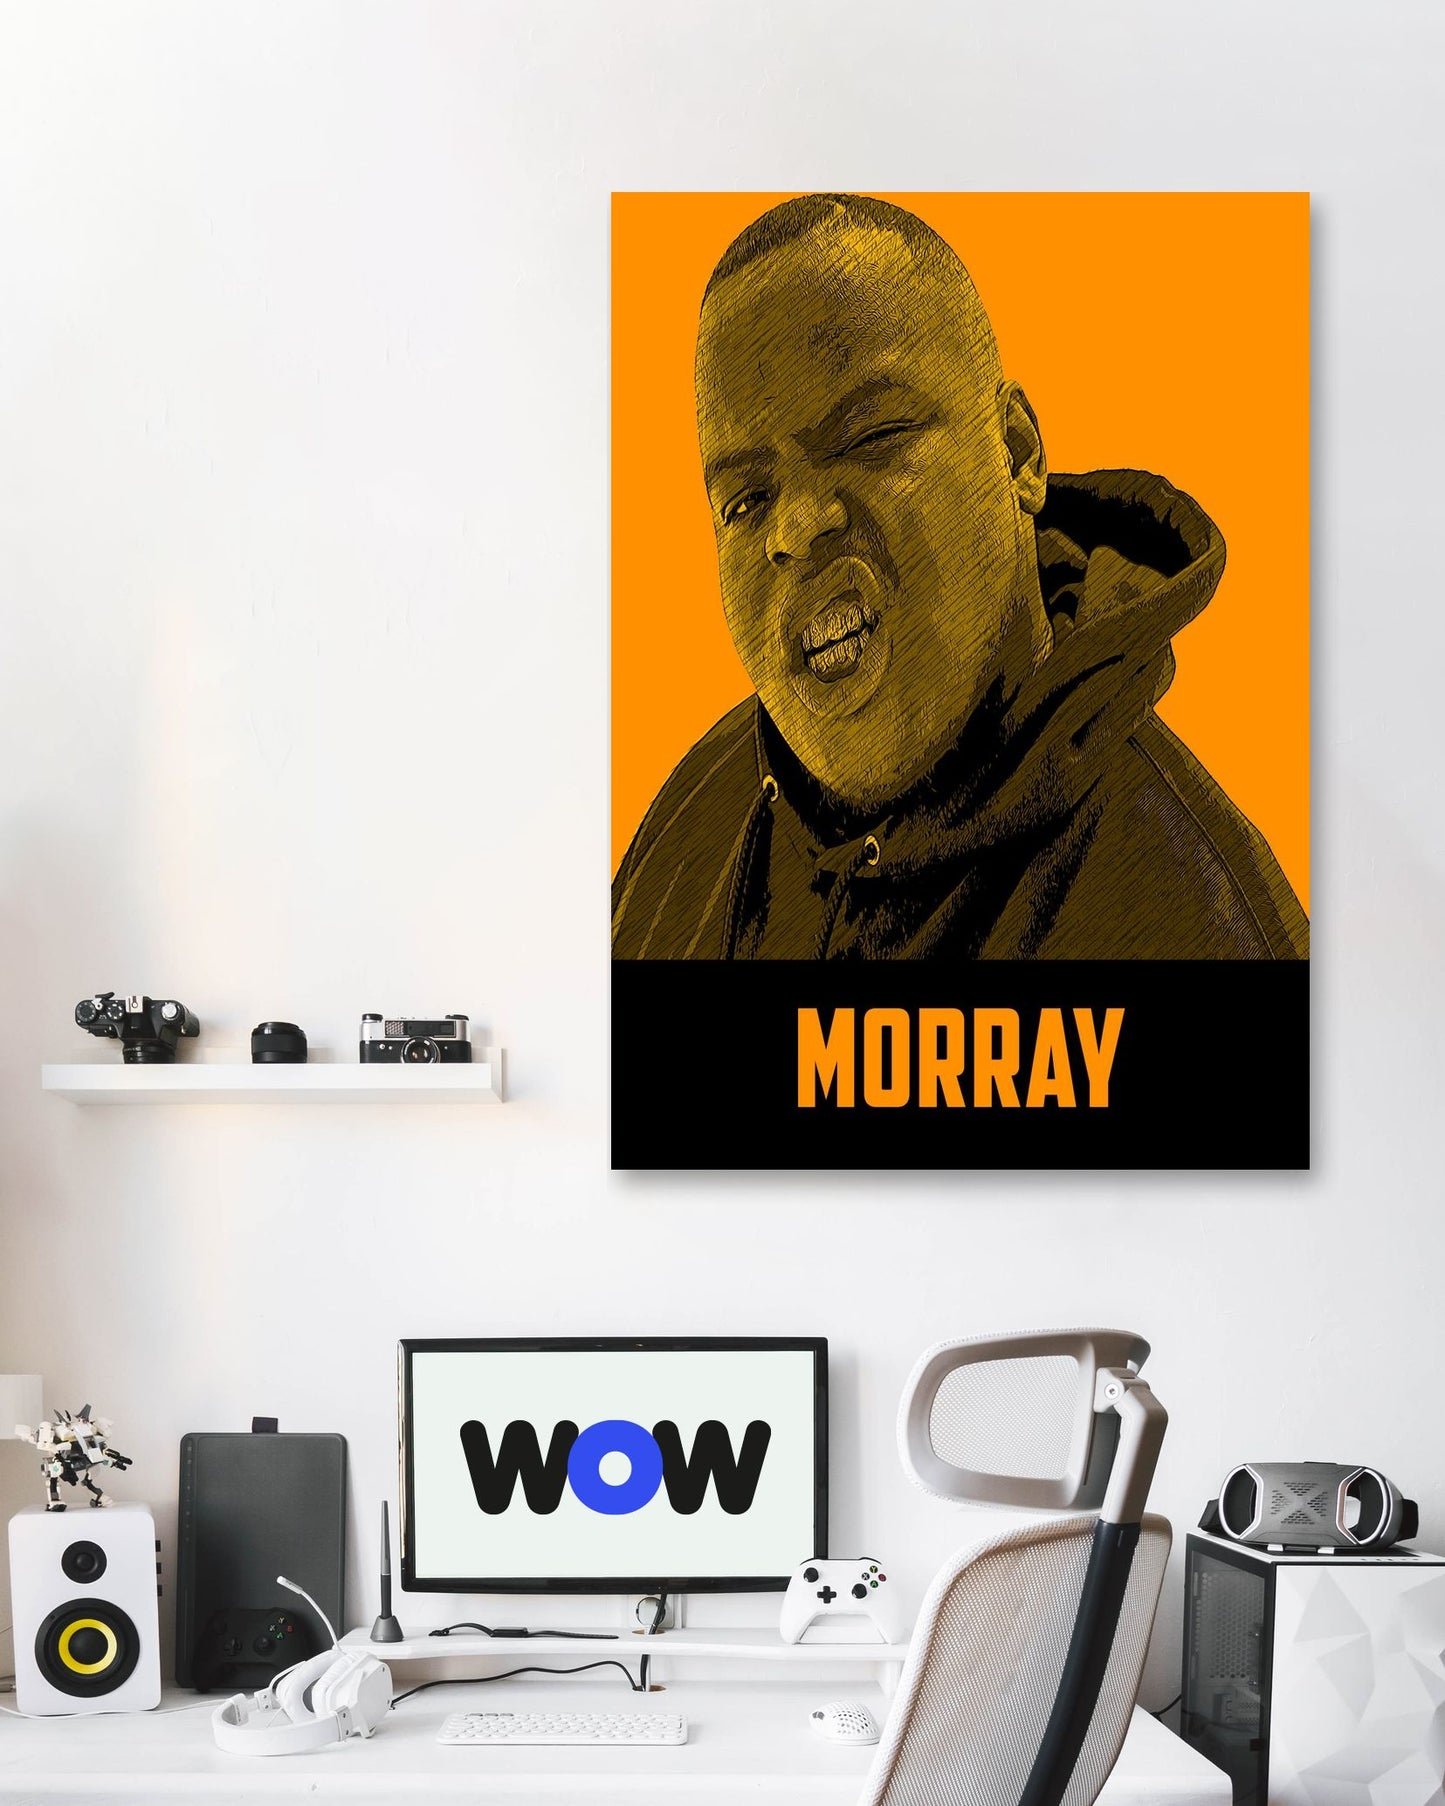 Morray - @LegendArt